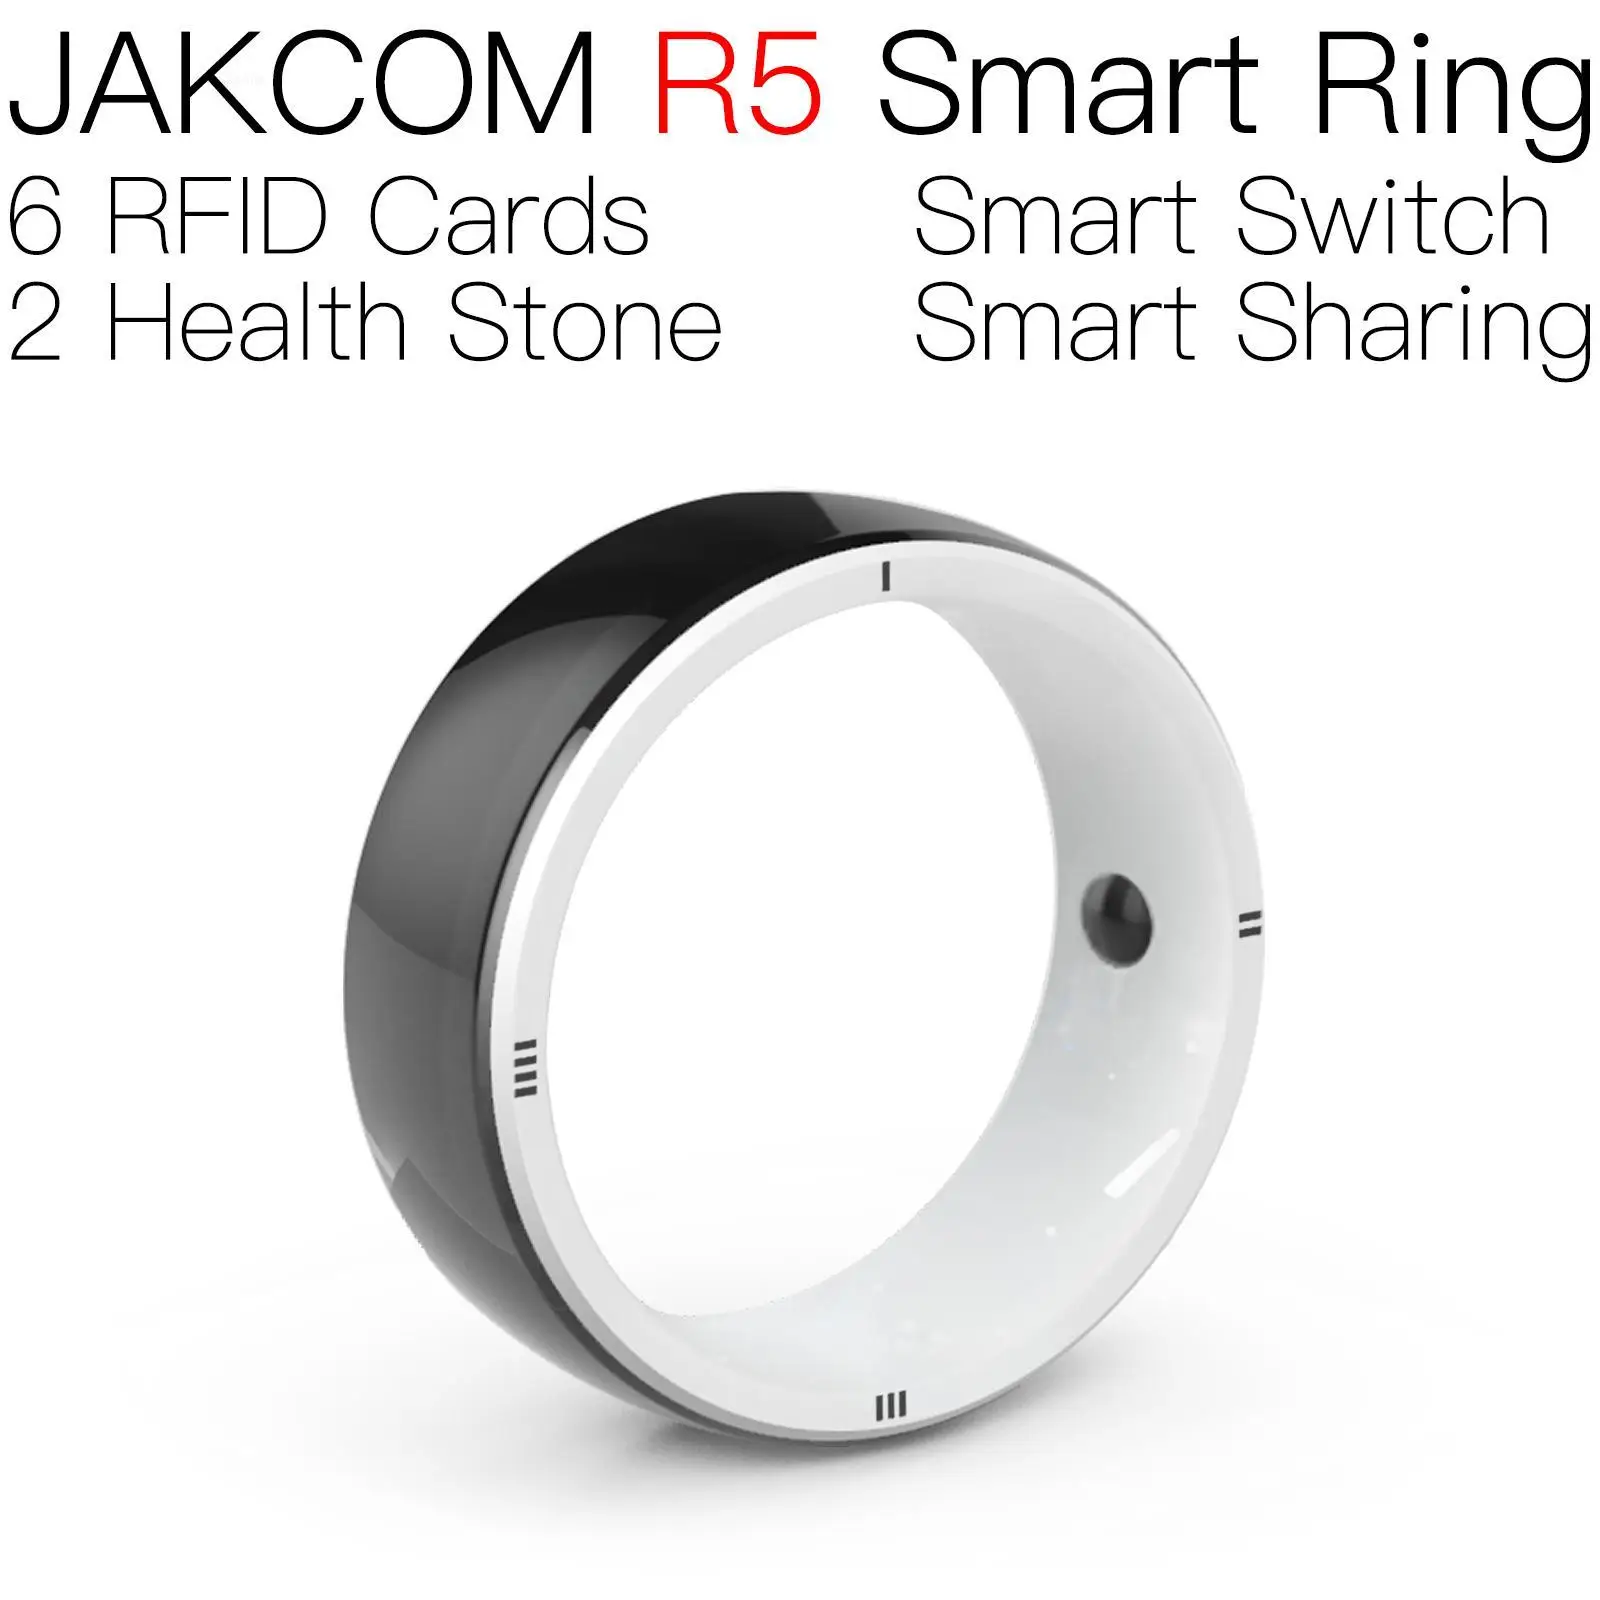 Смарт-кольцо JAKCOM R5 по цене выше, чем умные часы для женщин, электронный будильник hbo max, гибридные часы gtr 2